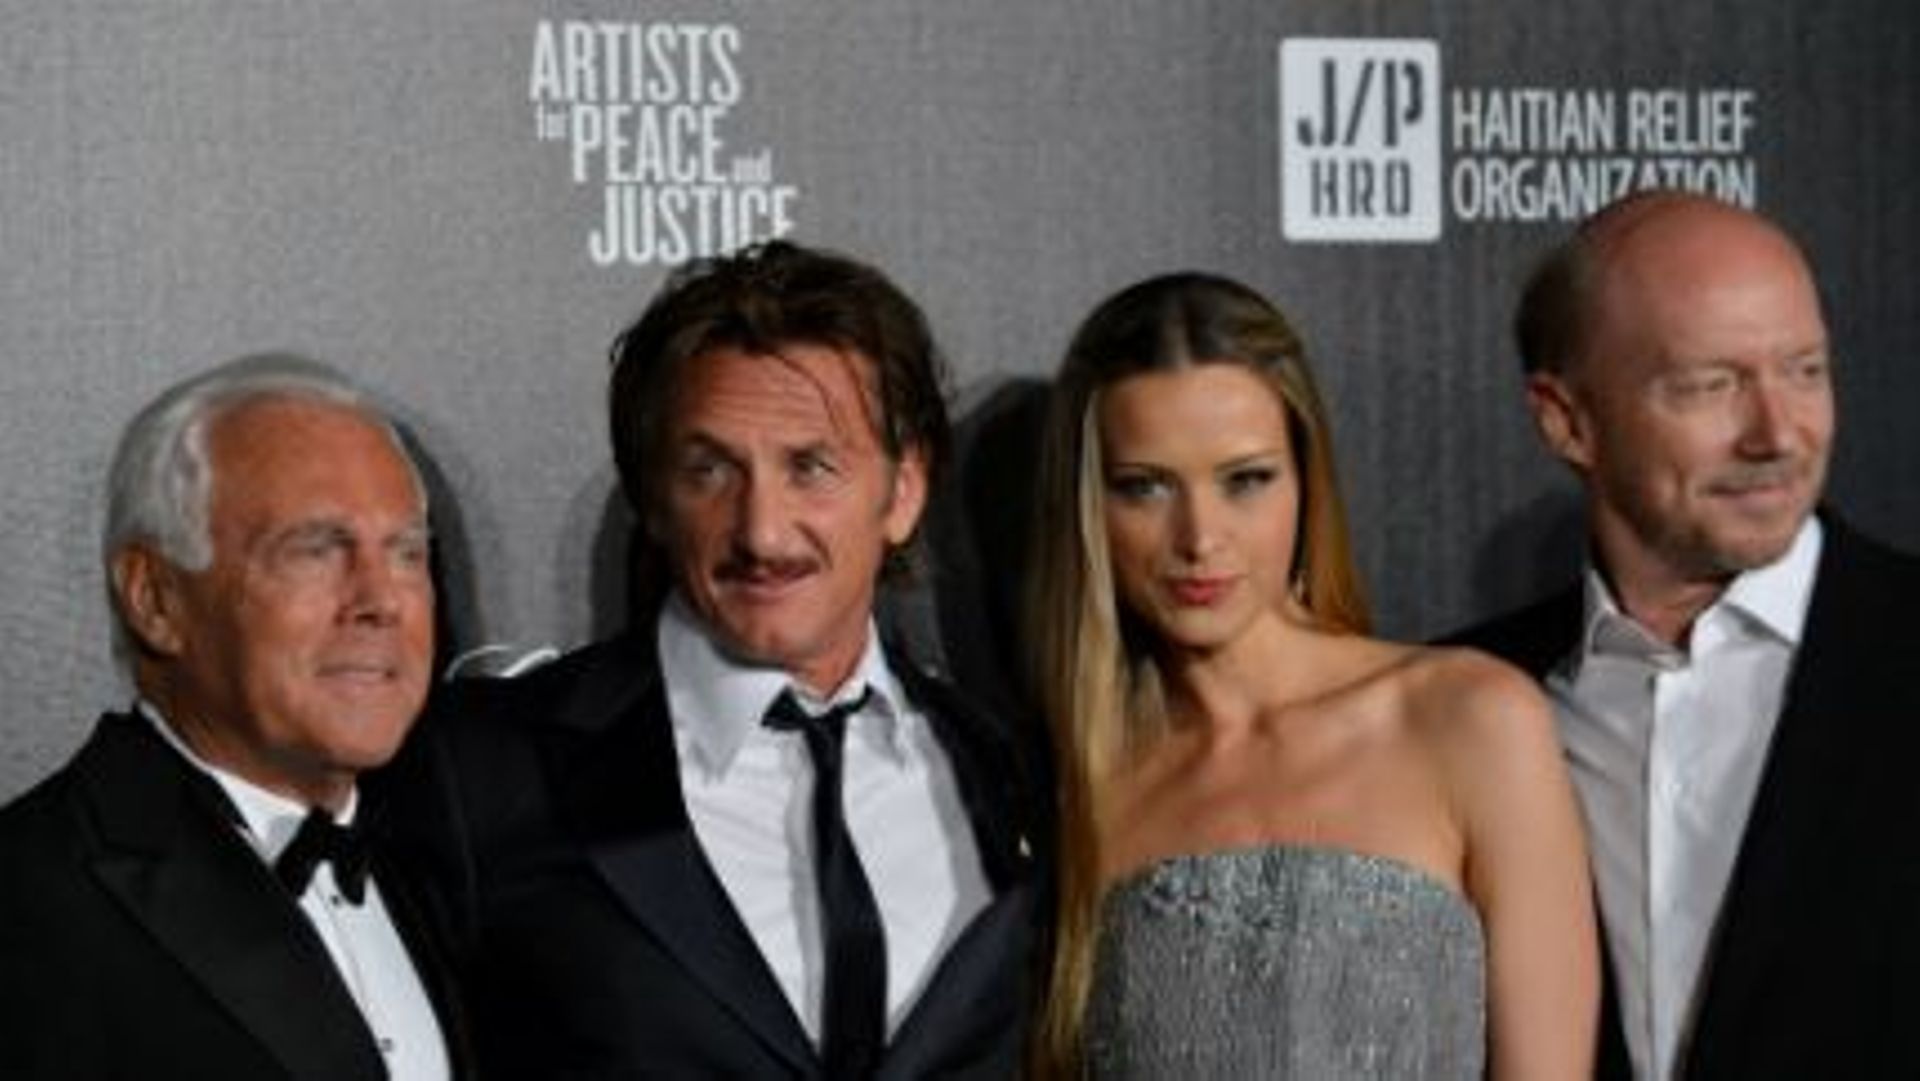 Sean Penn a réuni plus de 1,3 million d'euros en enchères pour Haïti